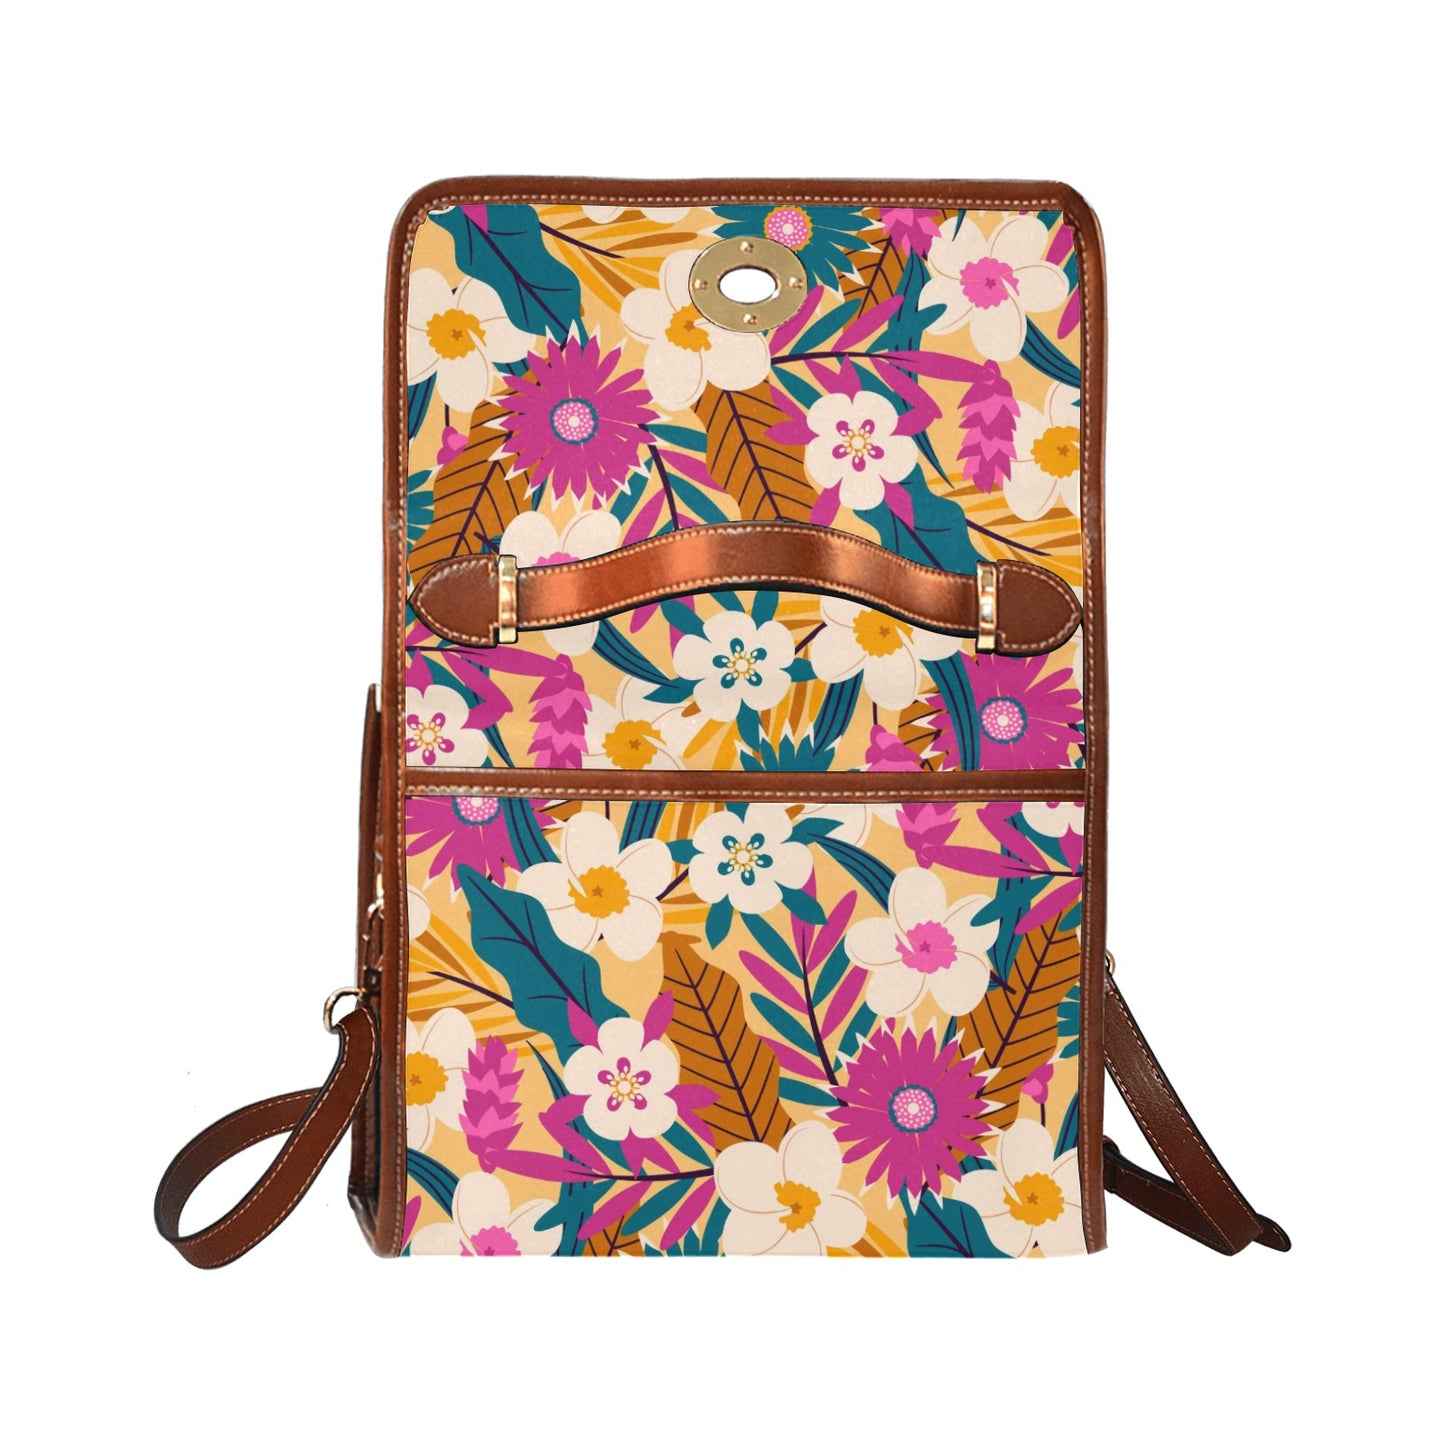 Women's Handbag, Retro Floral Handbag, Retro Handbag, Pink Teal Floral Handbag, Floral Purse, Vintage style handbag, Floral Satchel